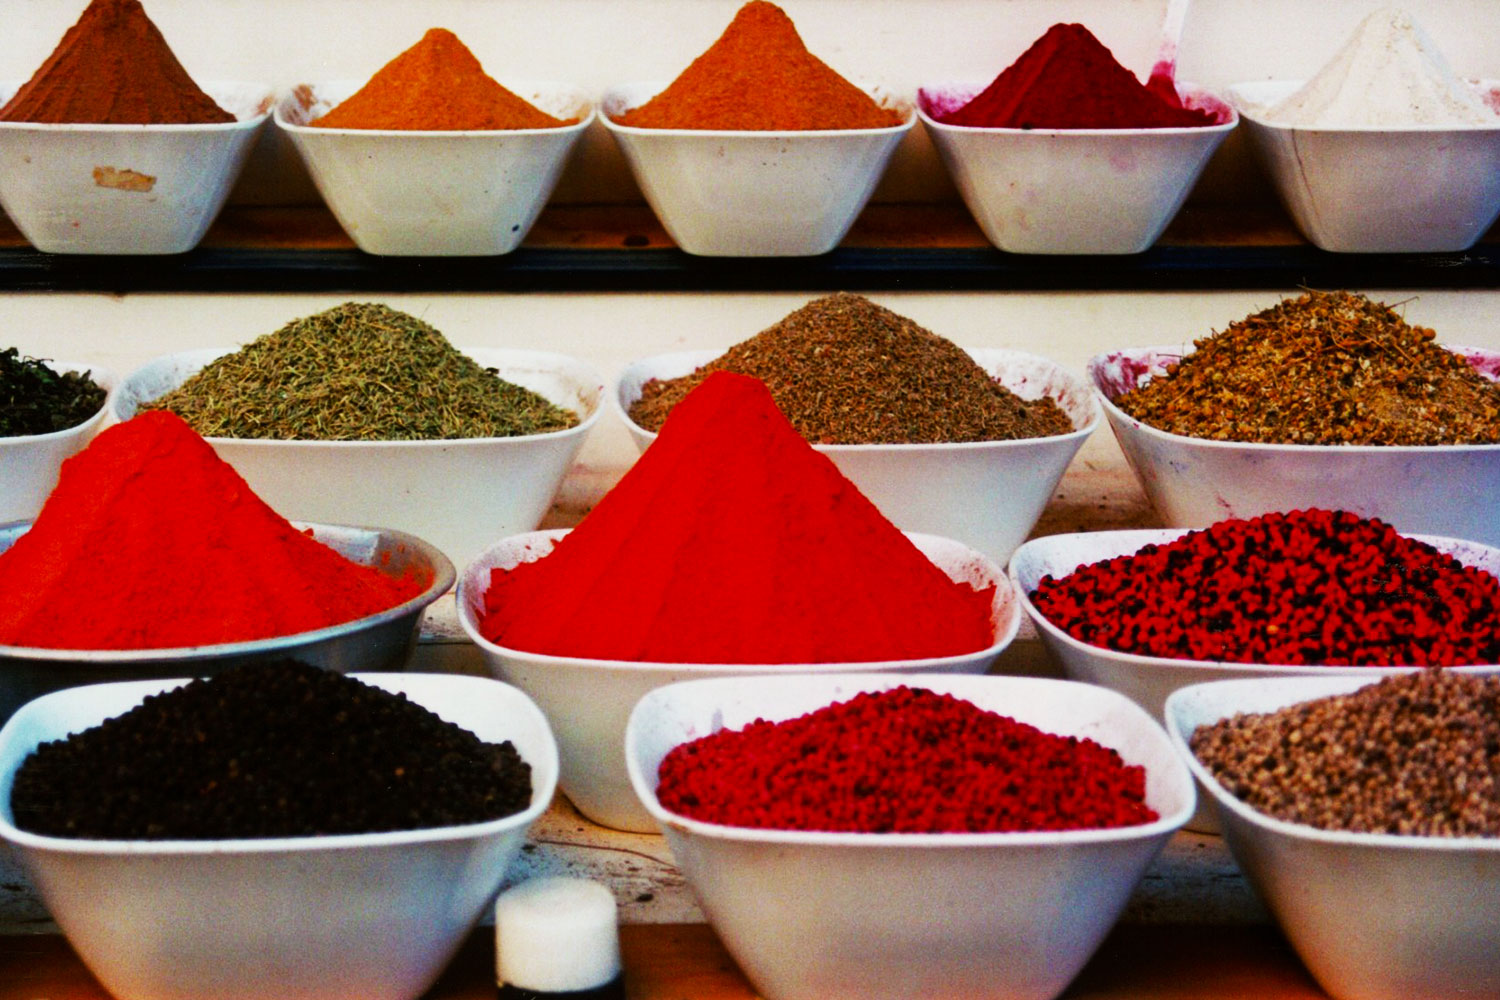 Spices for sale | Aswan Egypt | Dr Steven A Martin | Learning Adventure | International Education Online | Steven Martin PhD